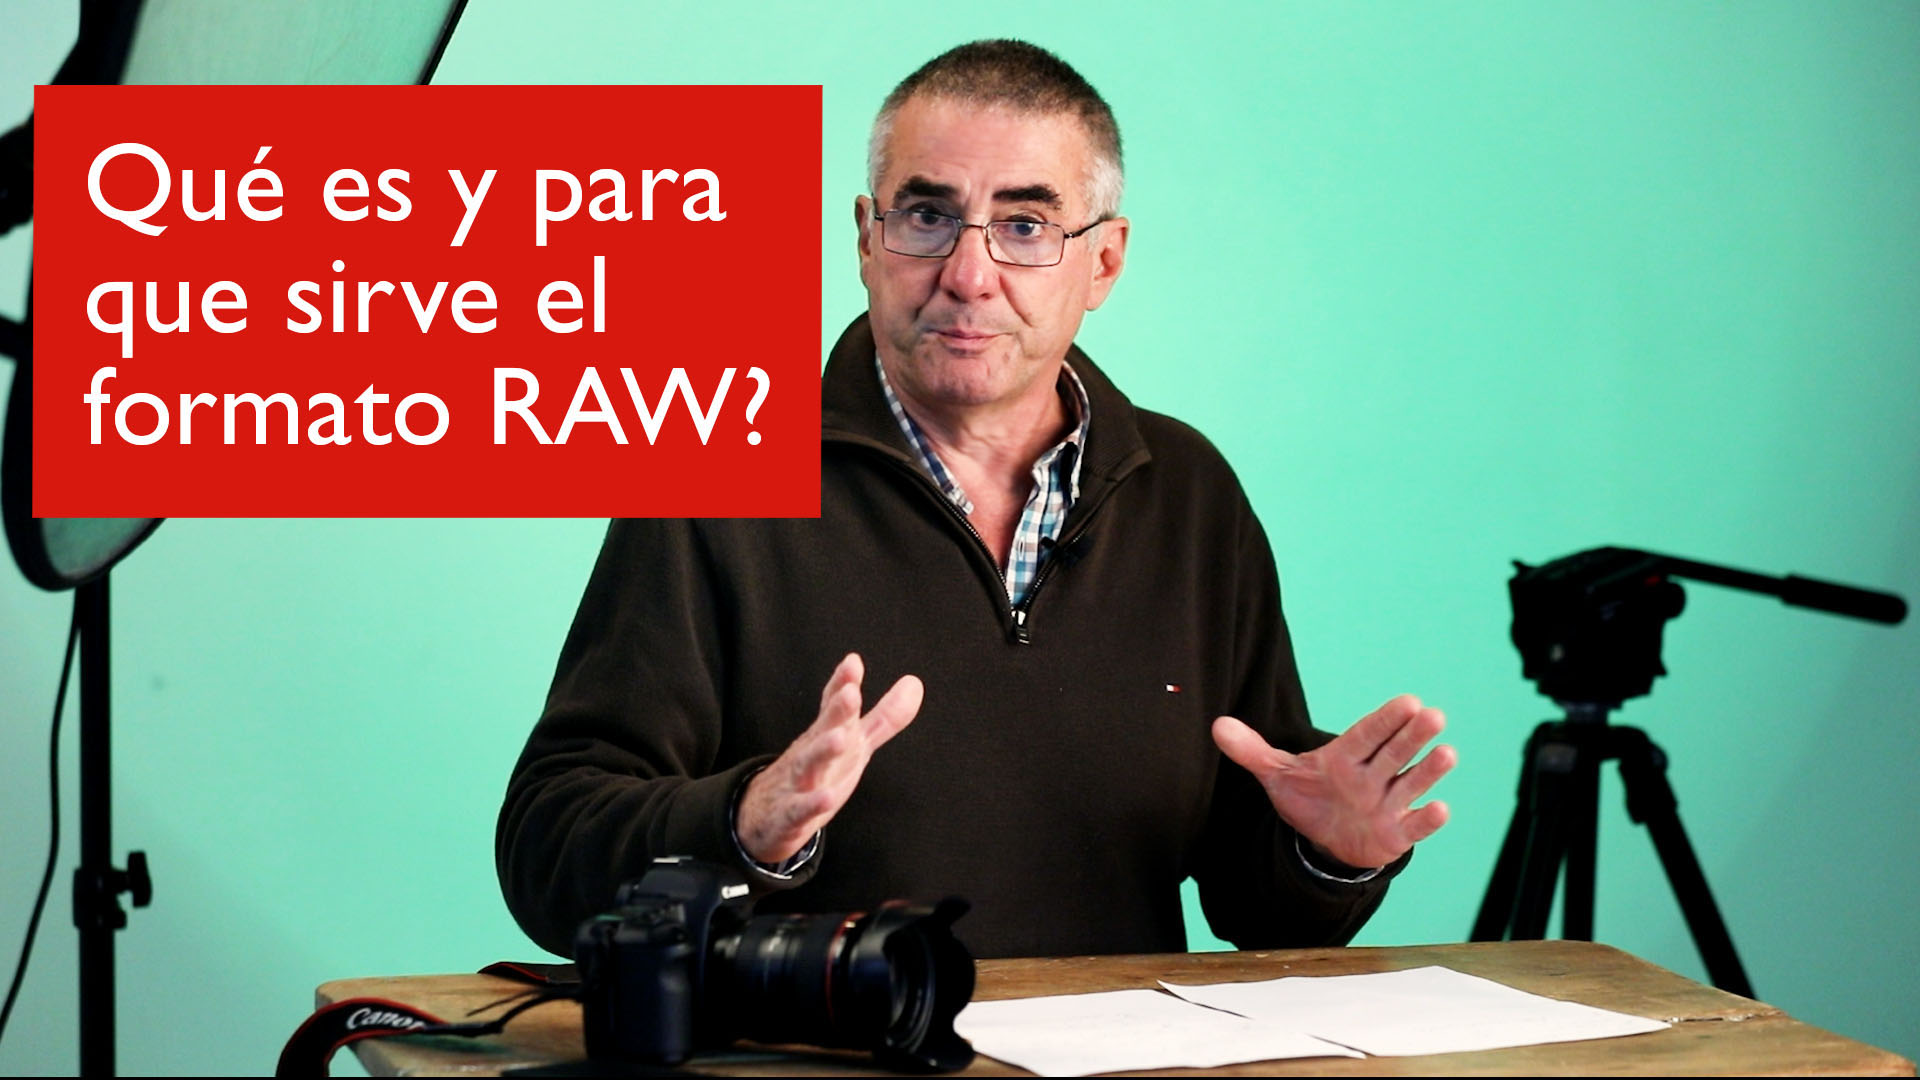 Que es y para que sirve el formato RAW?